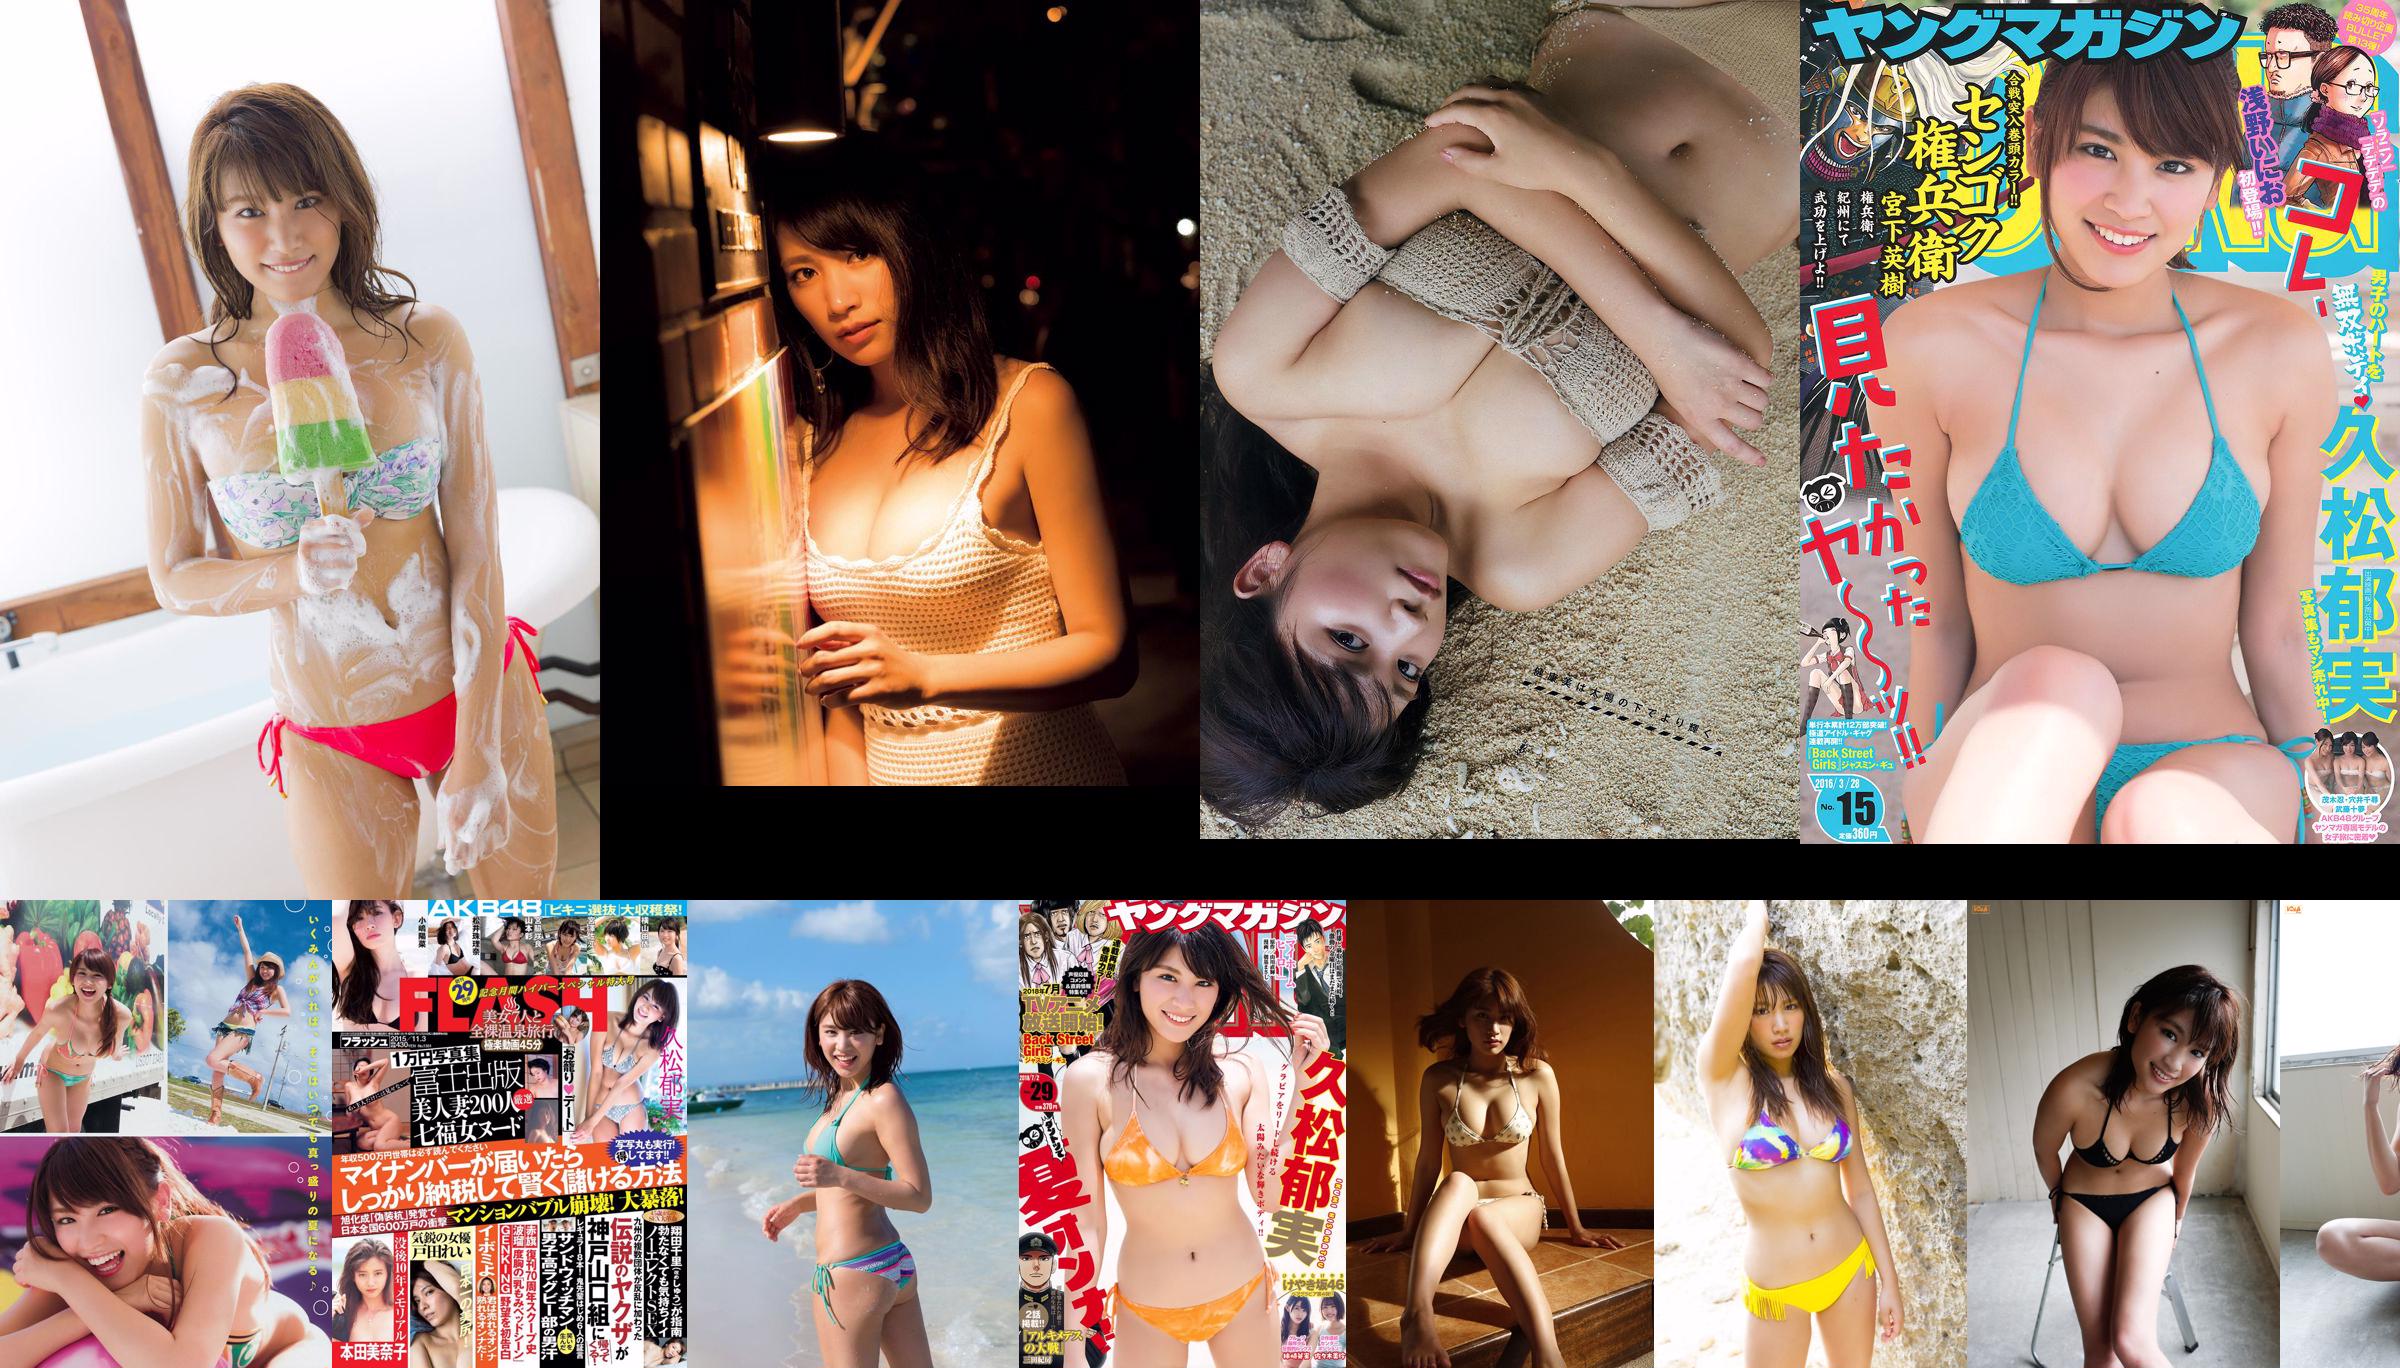 [Young Magazine] Hisamatsu Yumi Okazaki Saae 2017 No.33 Photo Magazine No.548688 Page 1